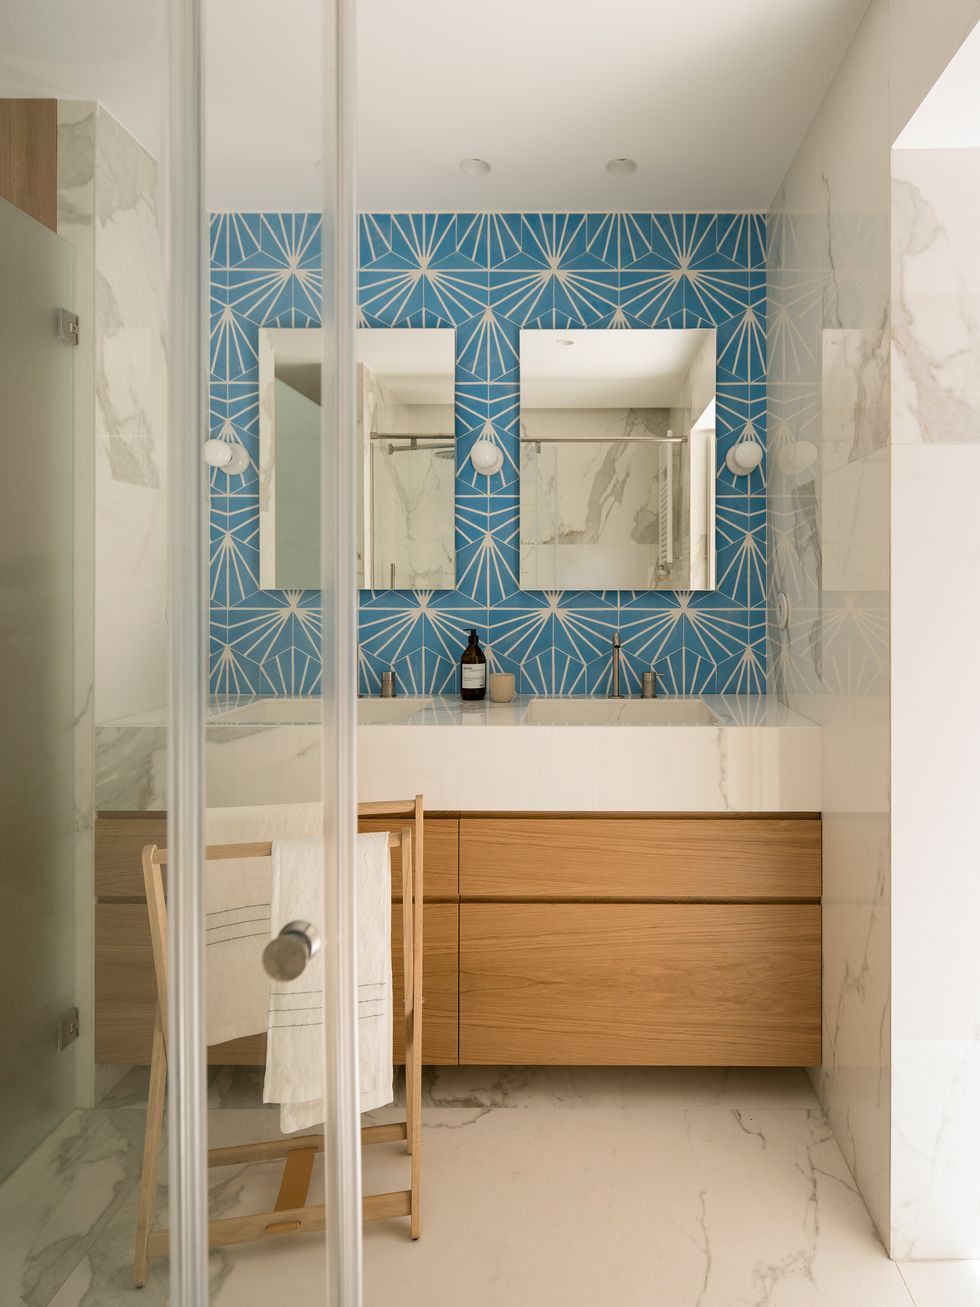 Espejos de baño con luz incorporada para una decoración minimalista y  moderna